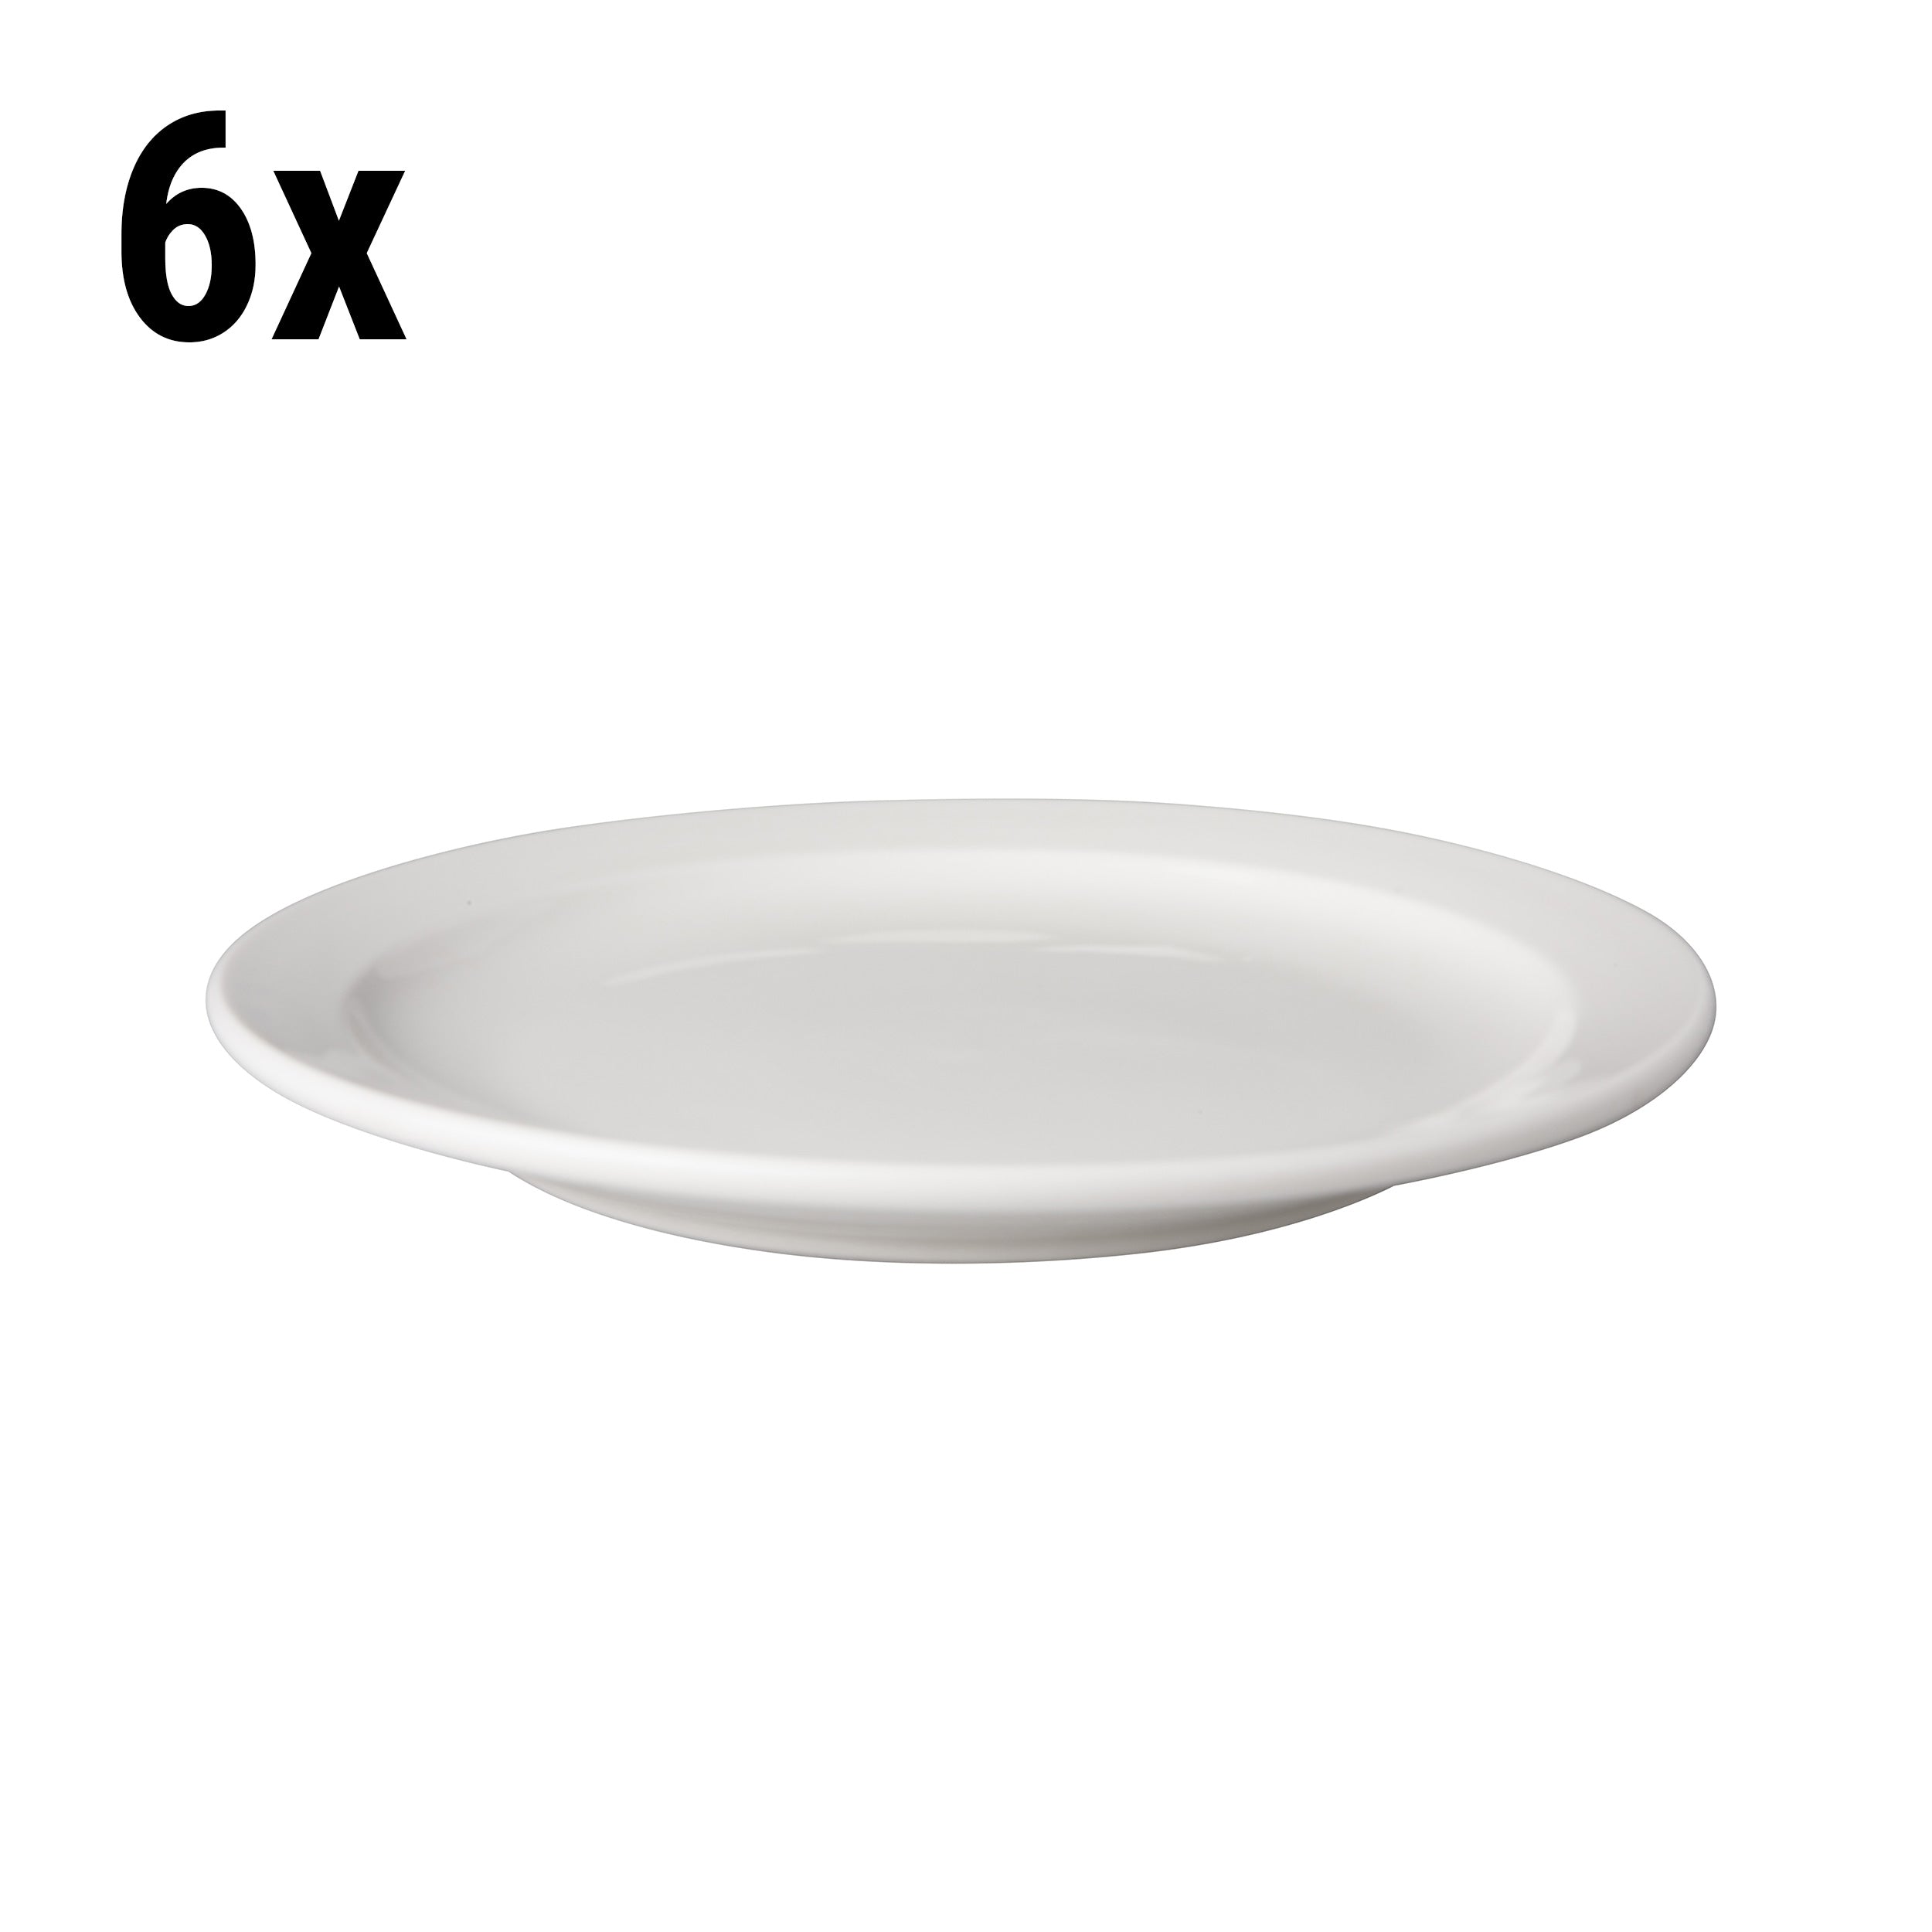 (6 stk.) Flad tallerken Mammoet - Ø 21 cm - Hvid